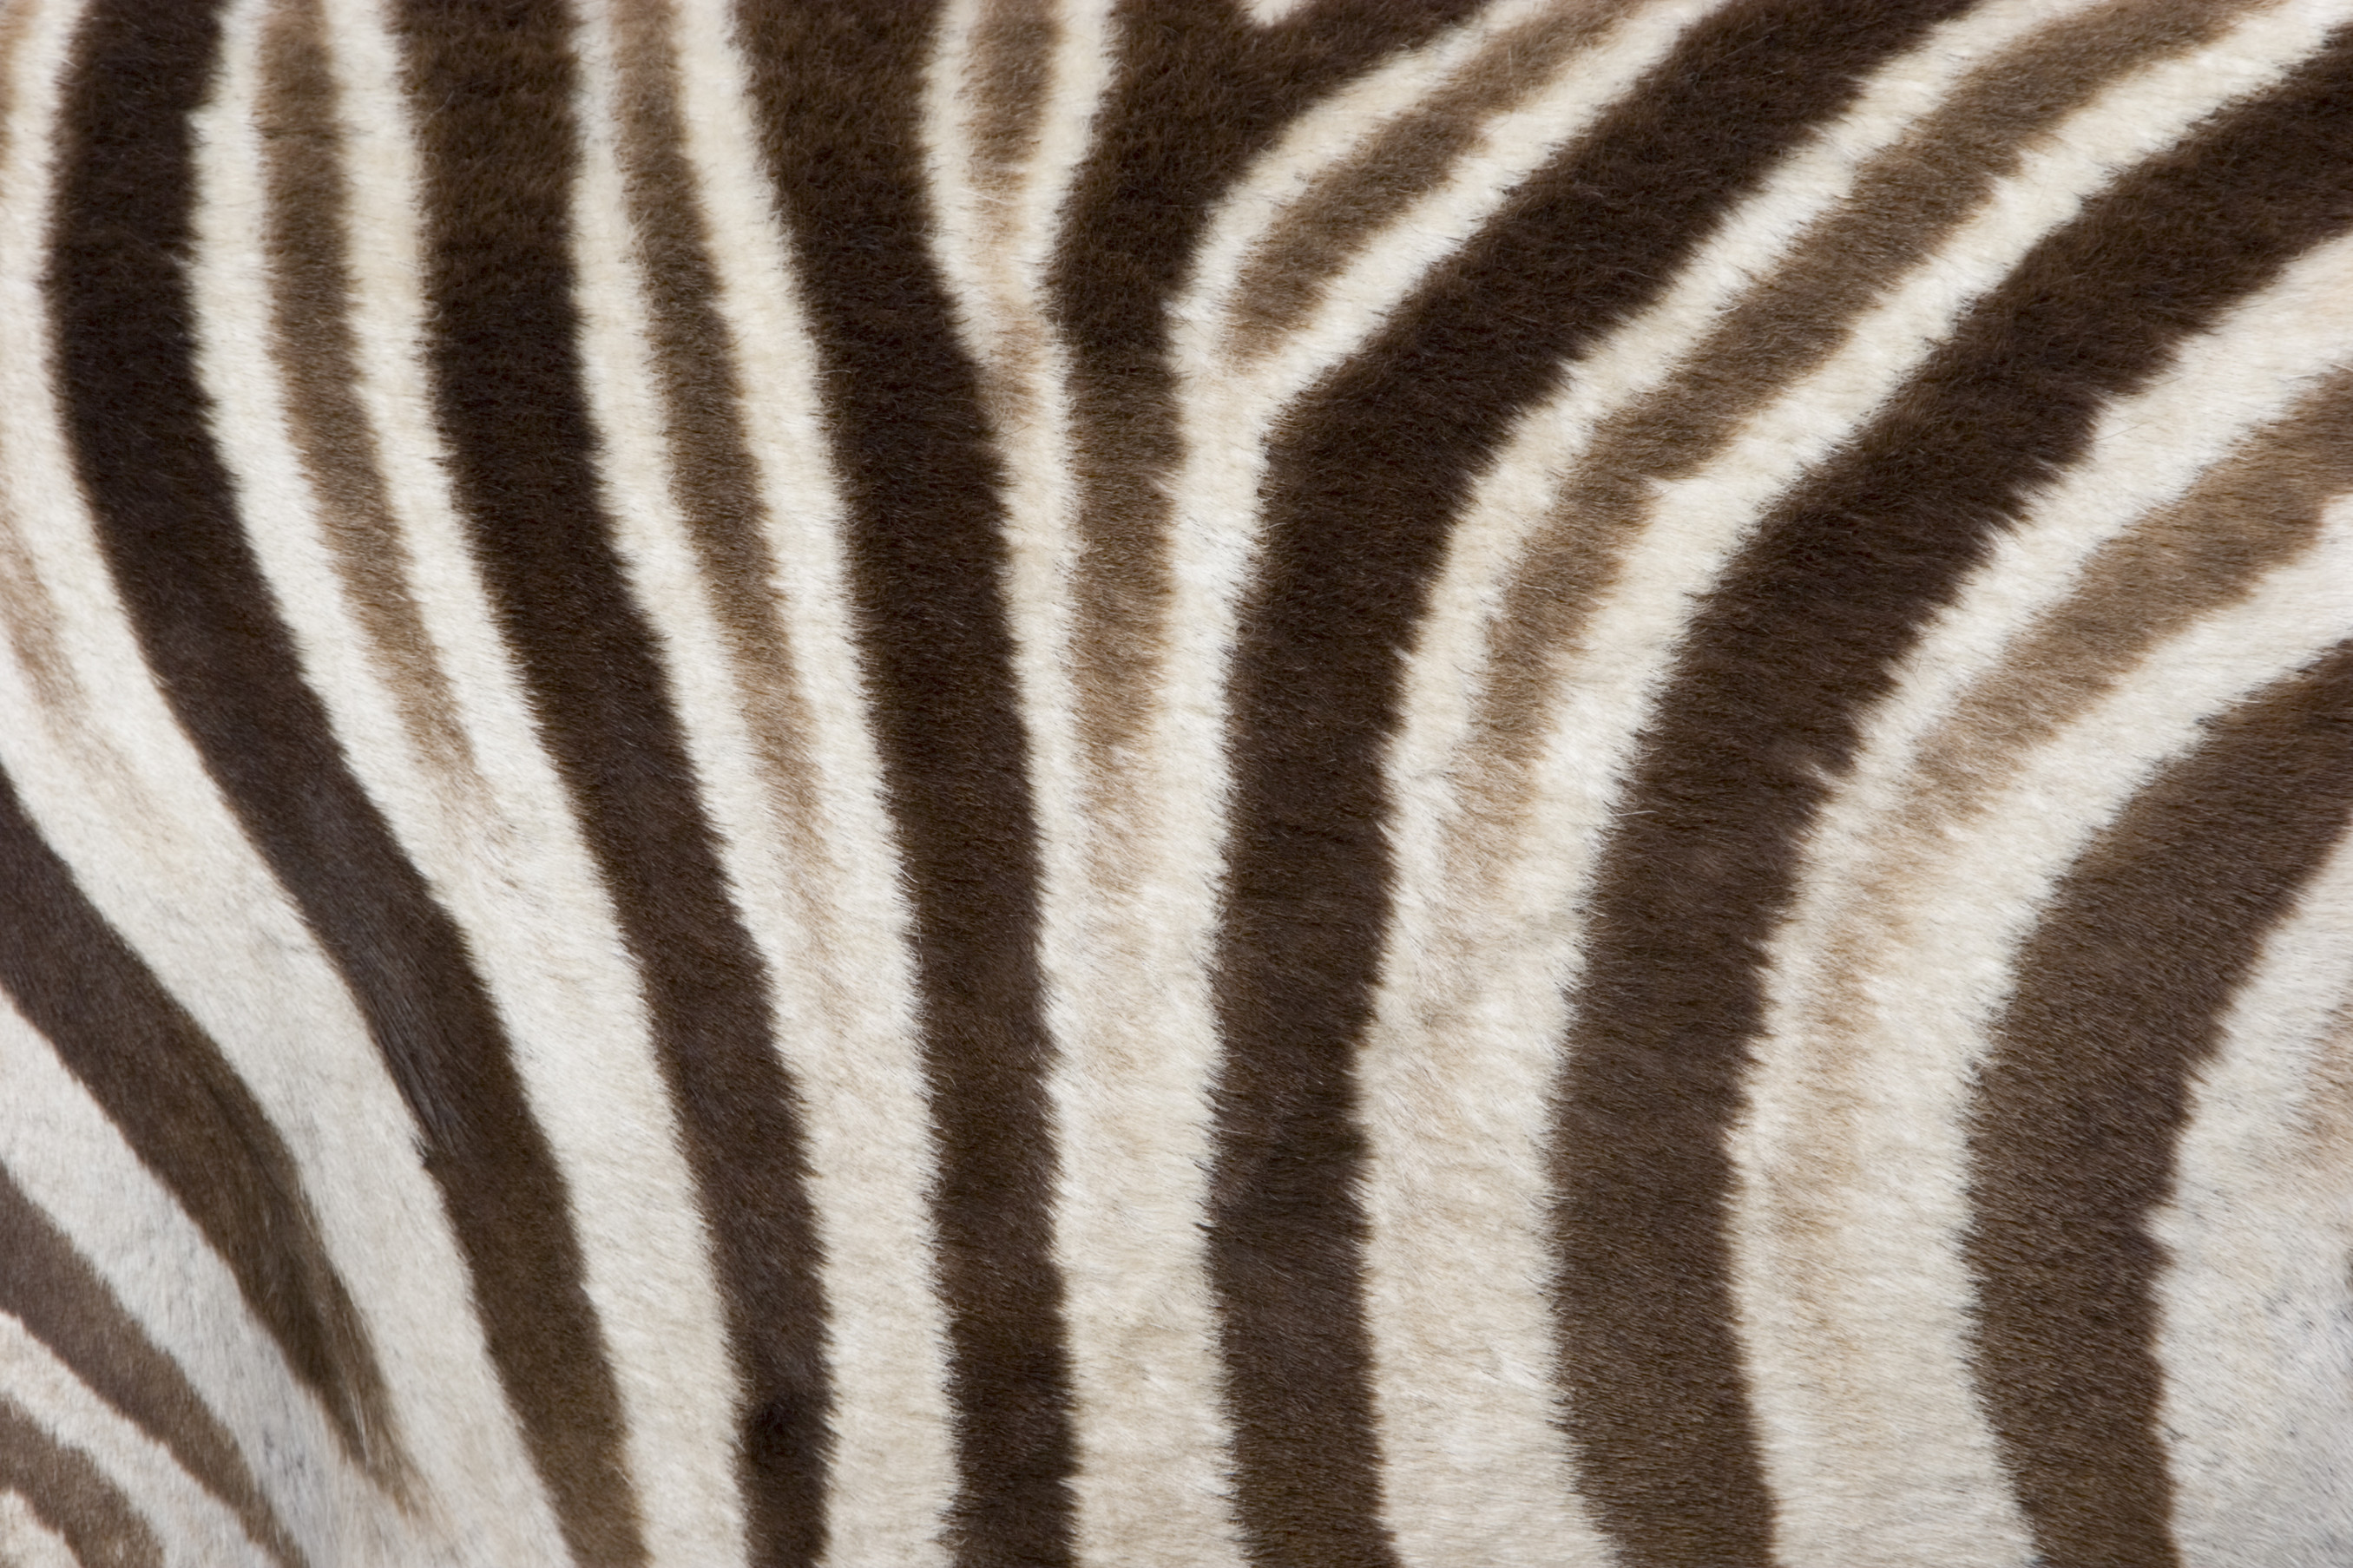 zebra skin wallpaper